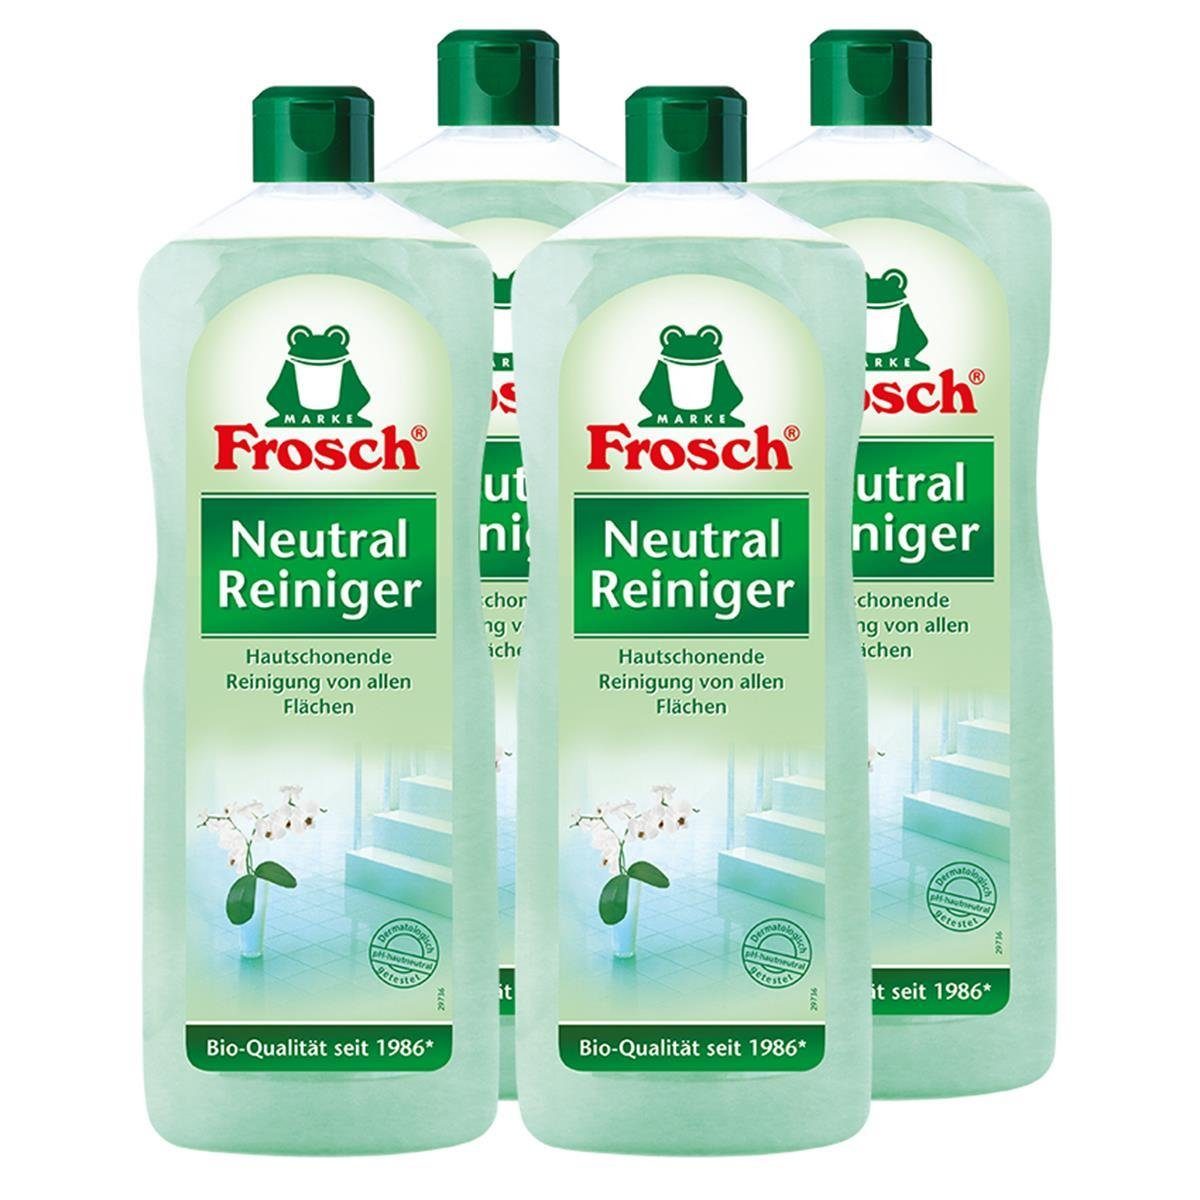 Liter Frosch 4x Reiniger1 Allzweckreiniger Neutral FROSCH